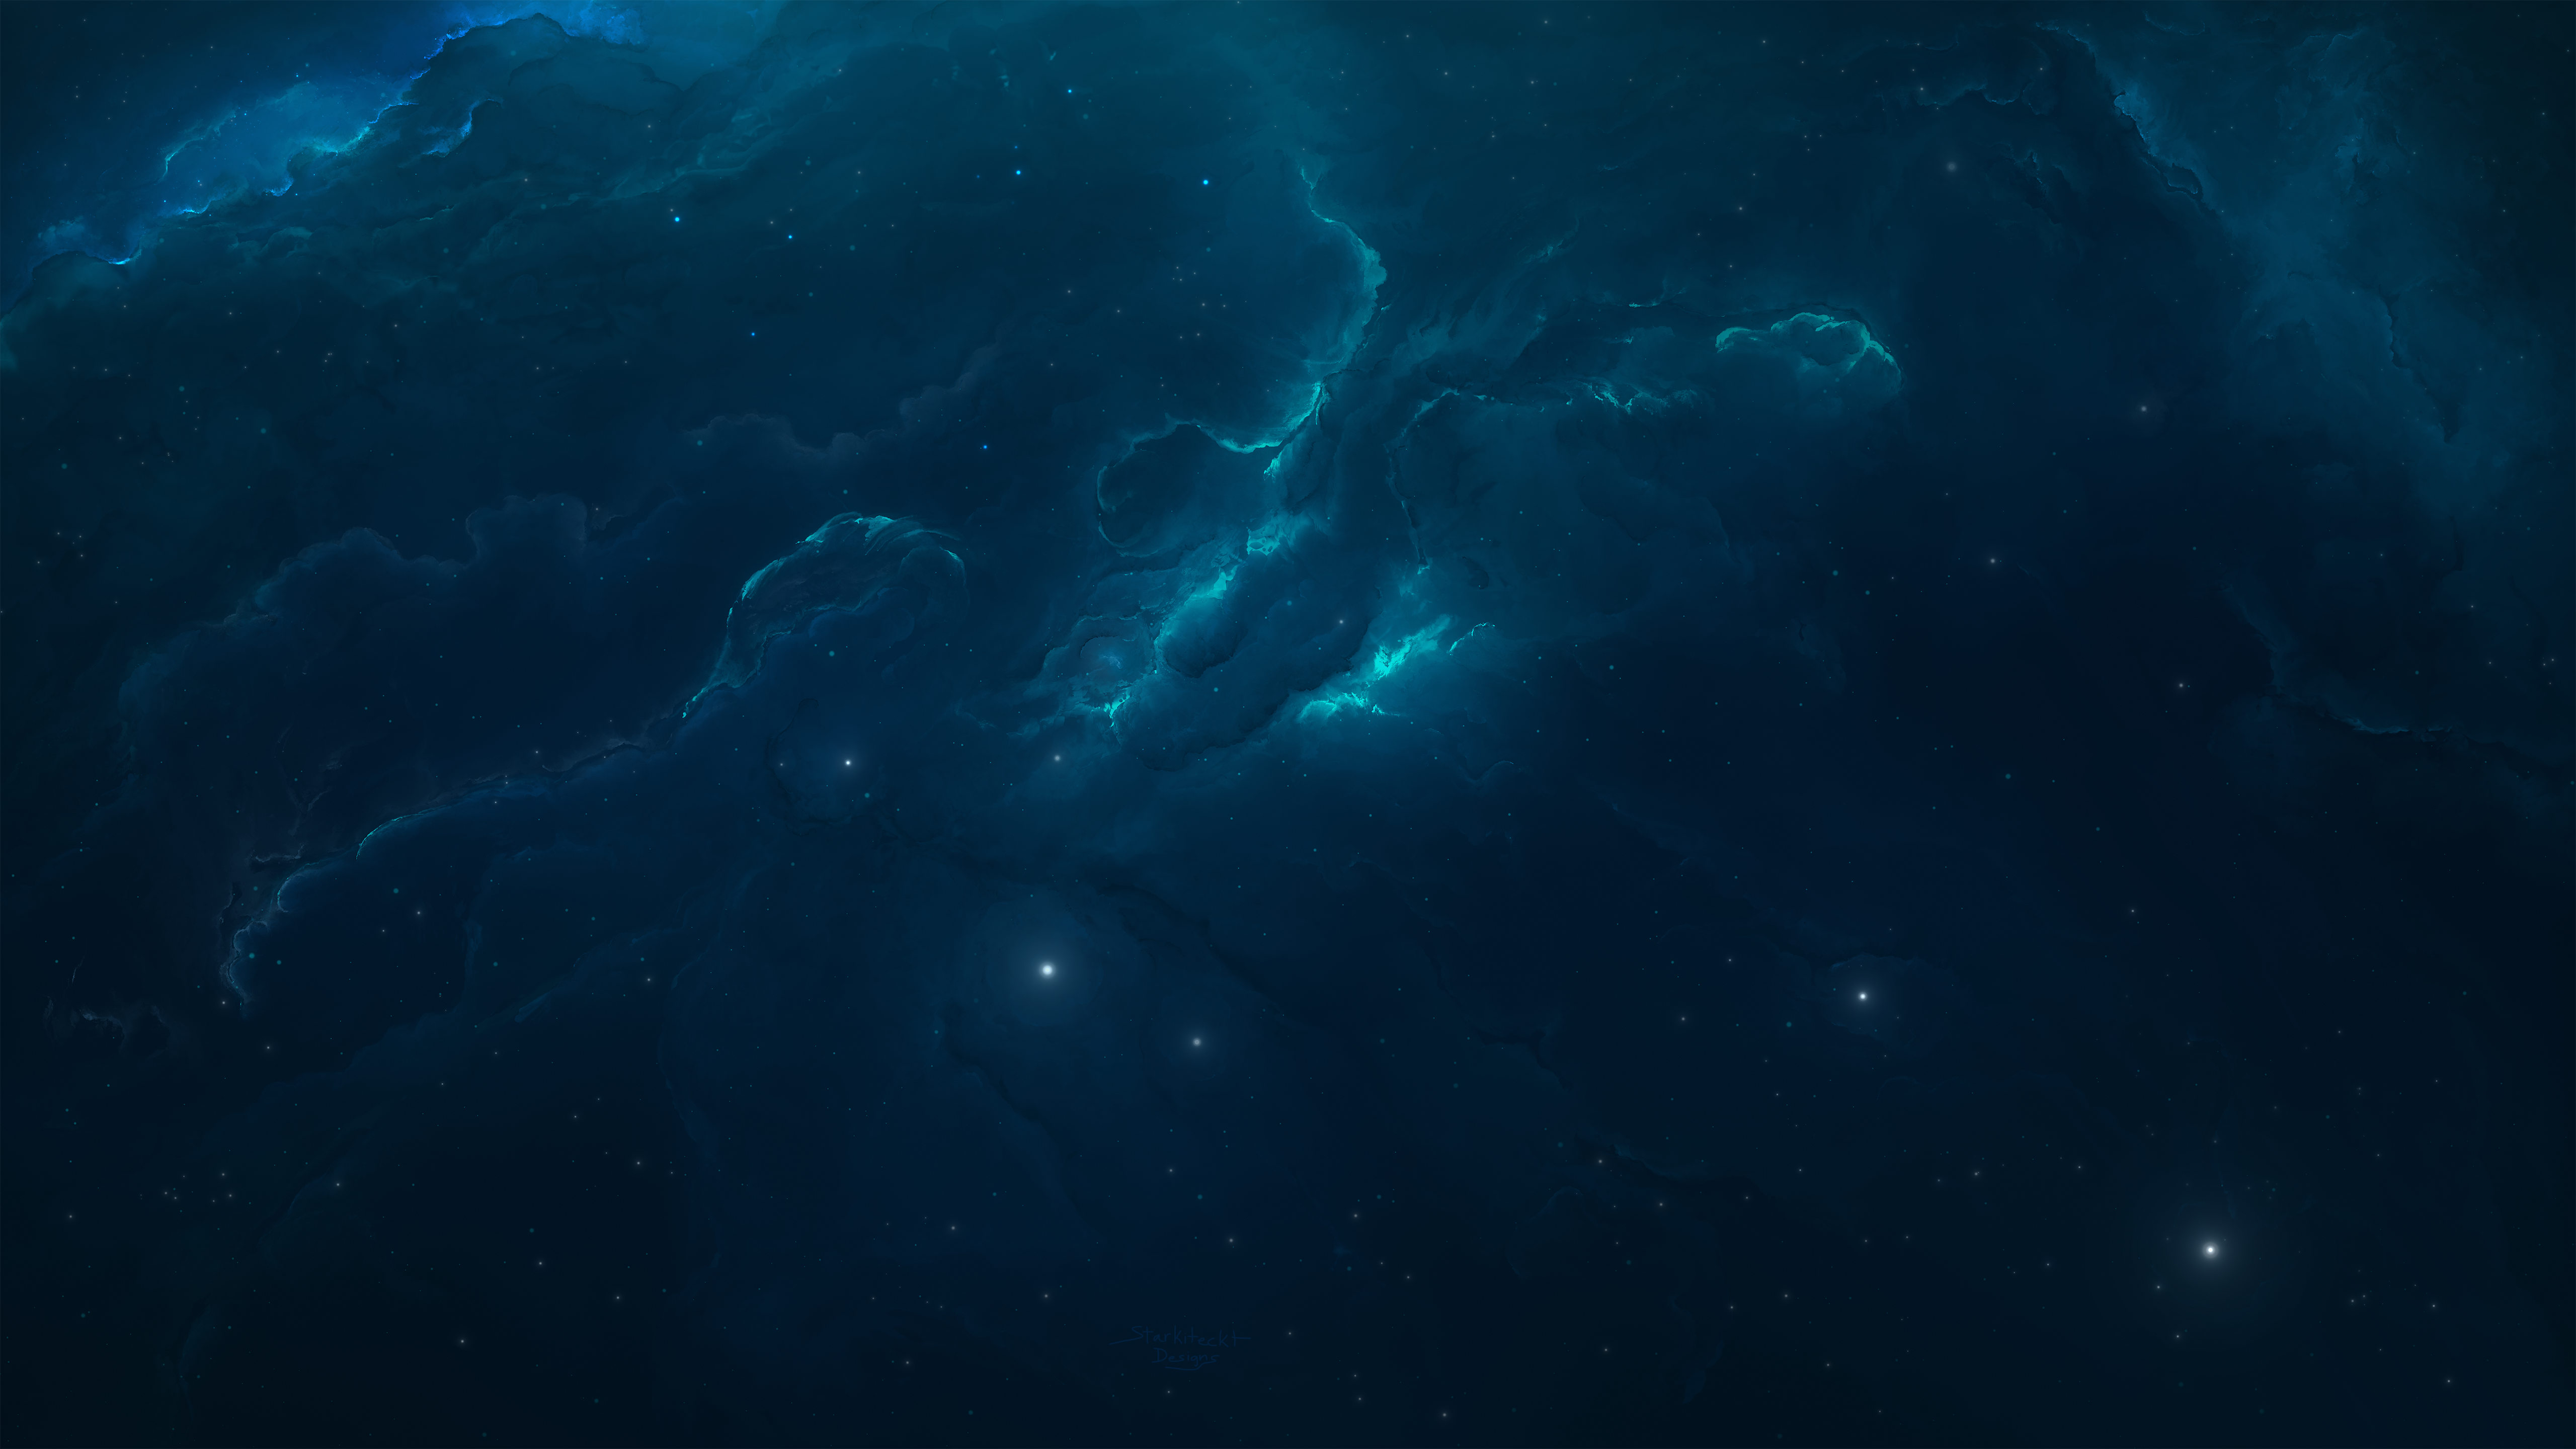 Atlantis Nebula 16 by Starkiteckt